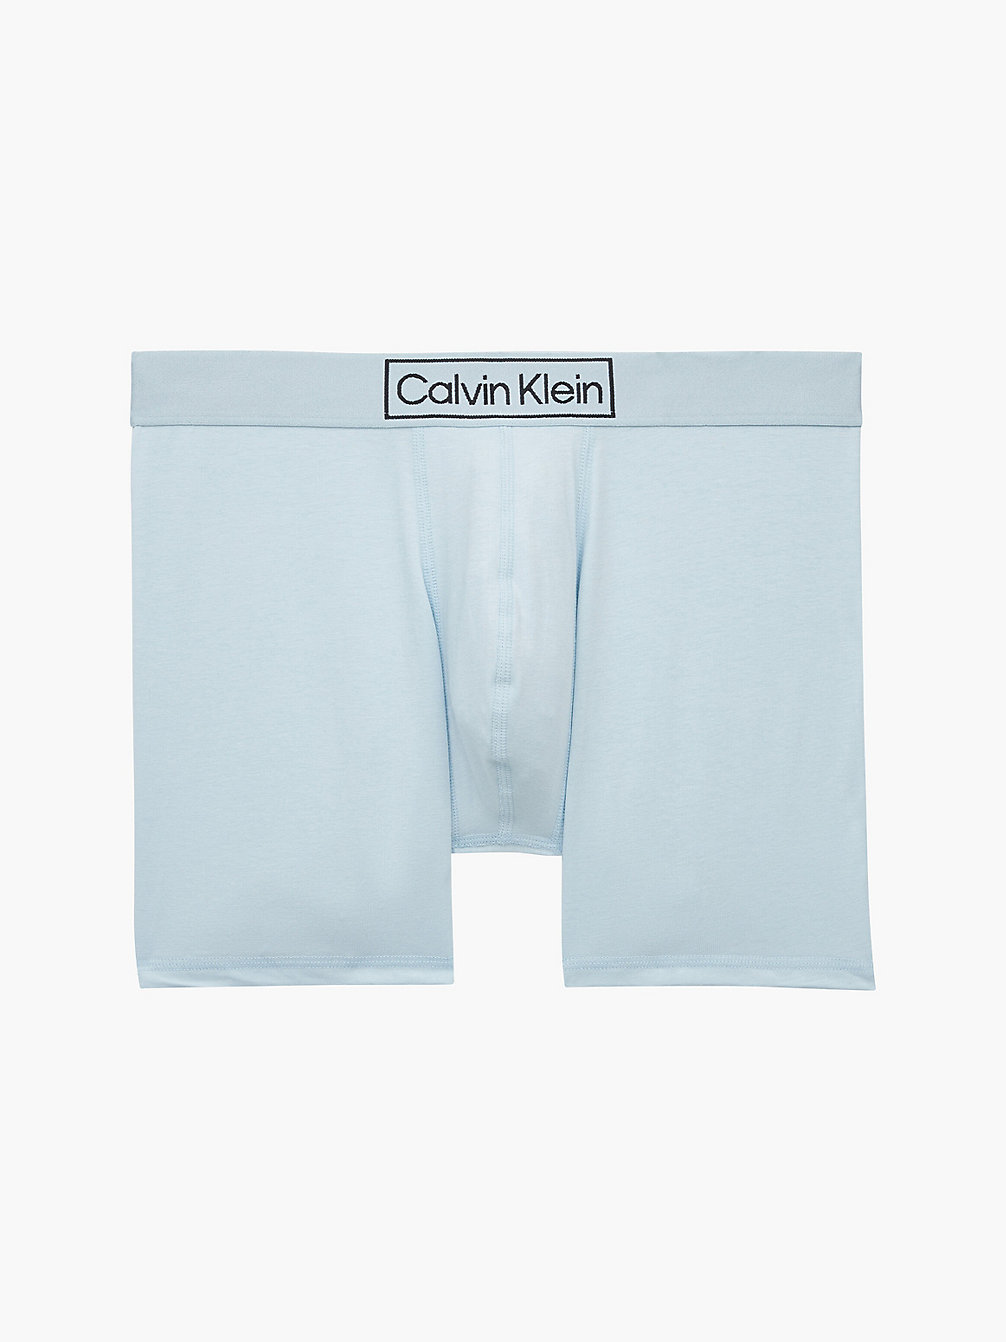 PALEST BLUE Boxers Briefs - Reimagined Heritage undefined men Calvin Klein